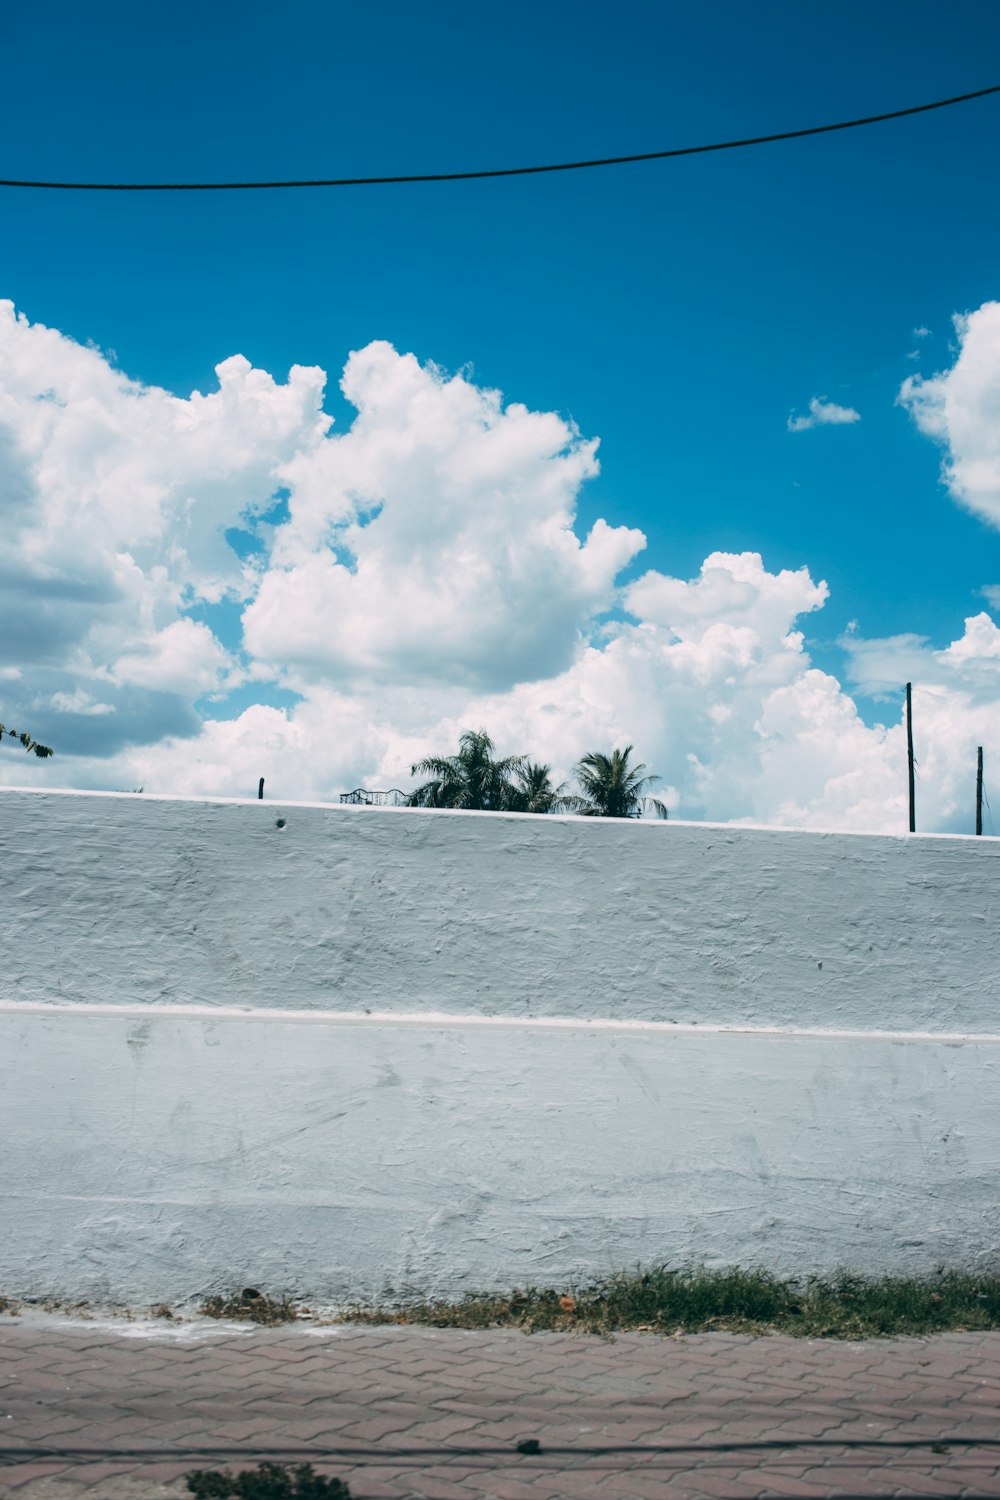 pared de hormigón blanco bajo nubes blancas y cielo azul durante el día